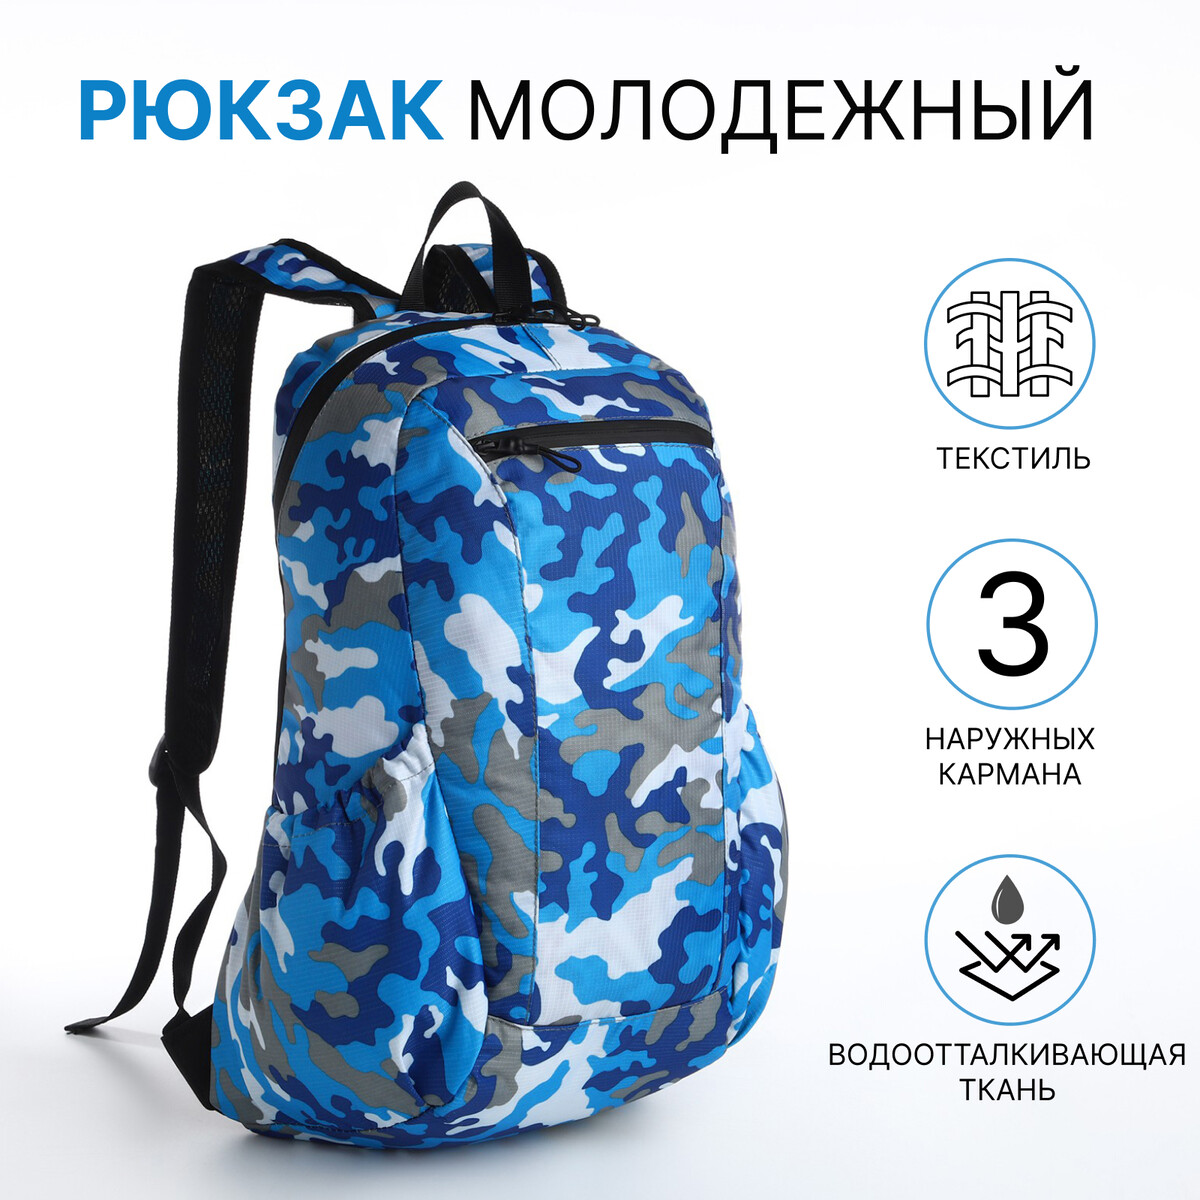 Рюкзак молодежный, водонепроницаемый на молнии, 3 кармана, цвет голубой/синий рюкзак молодежный водонепроницаемый на молнии 3 кармана голубой синий